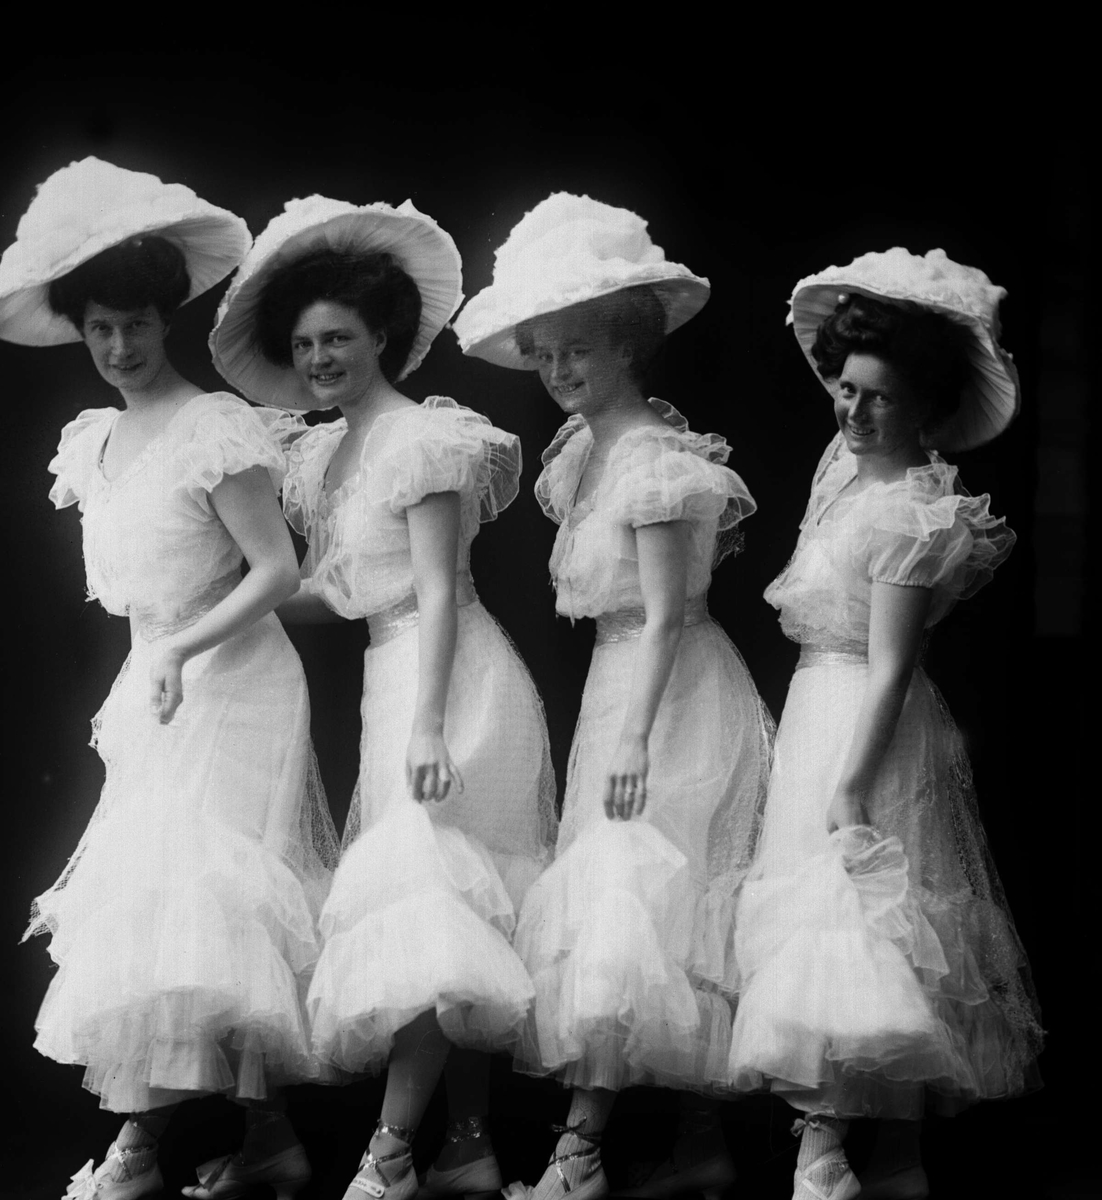 Gruppeportrett, fire kvinner kledd i hvitt. Dansere?